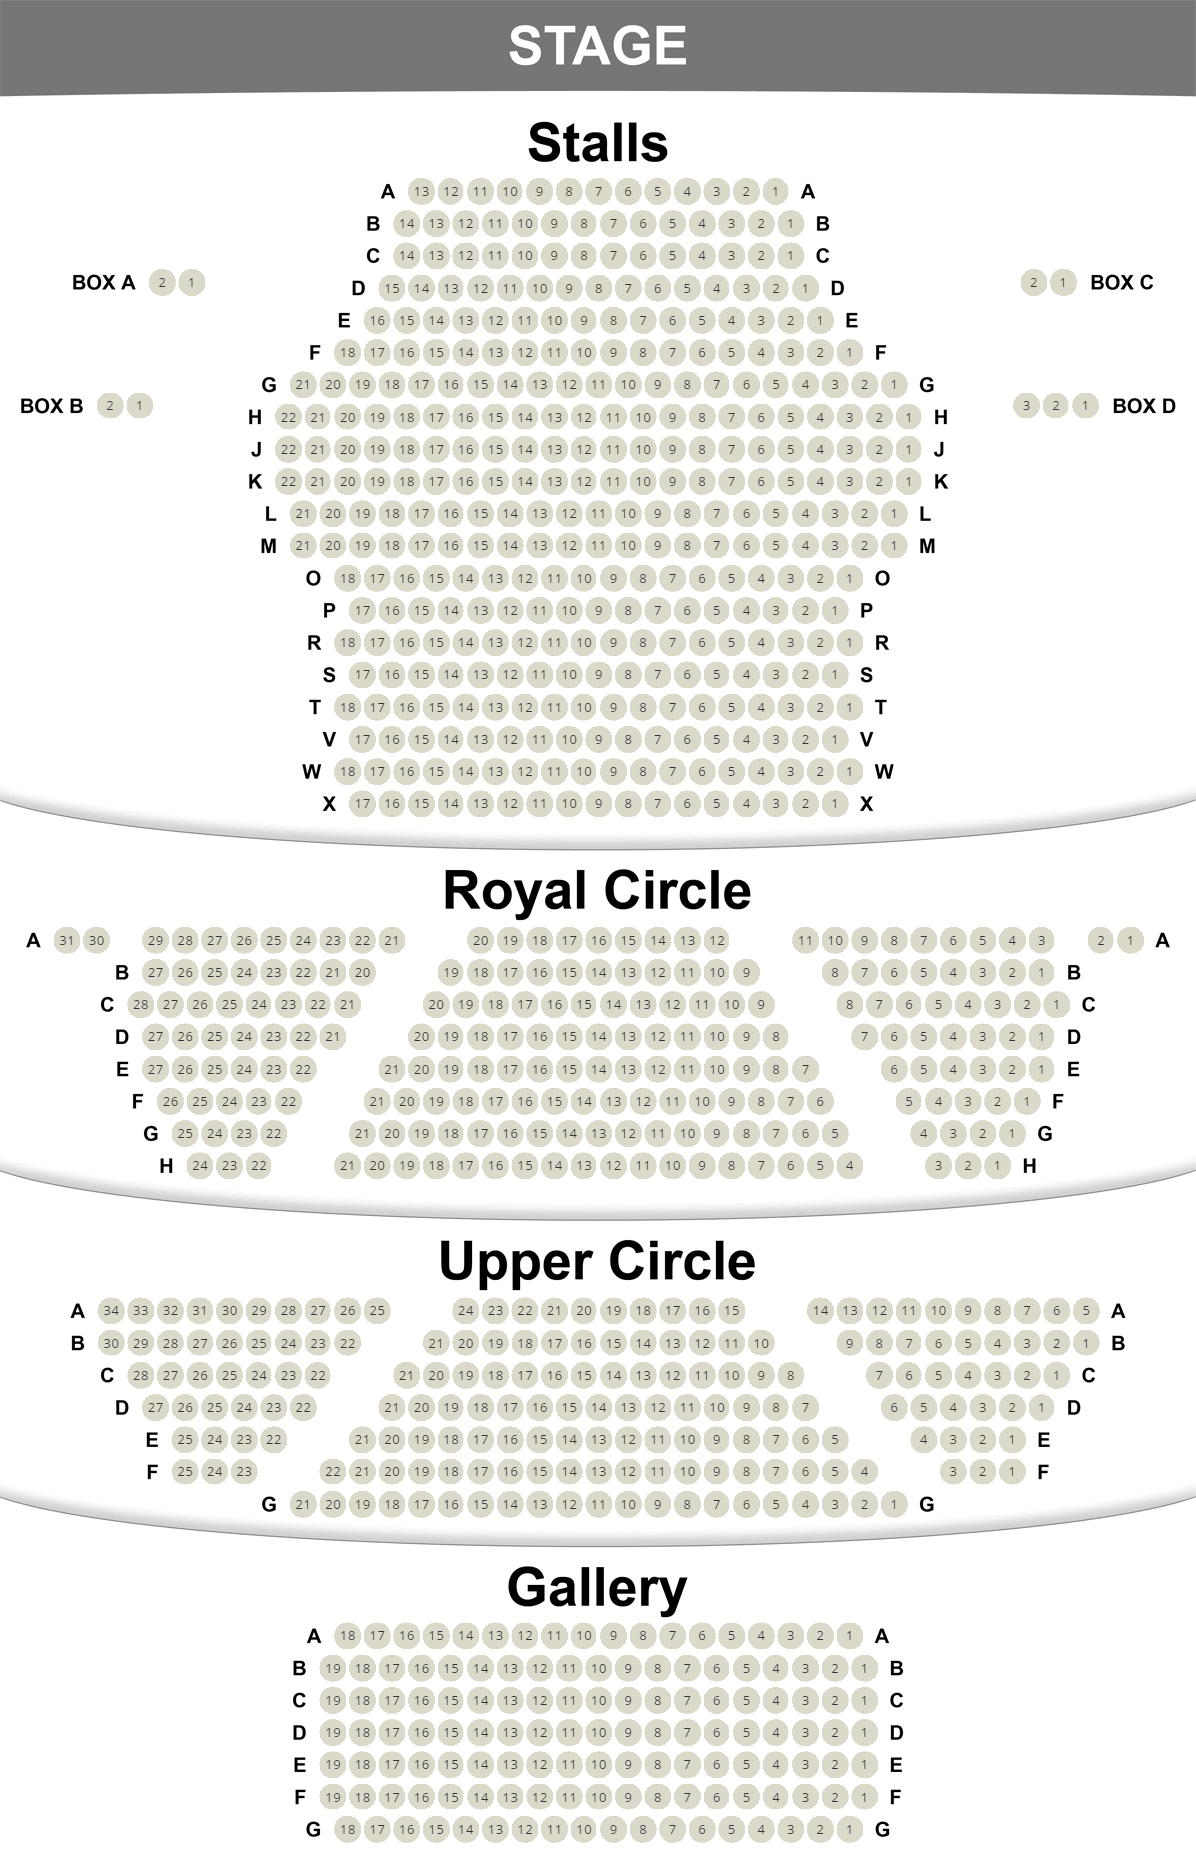 Theatre Royal Haymarket seating plan